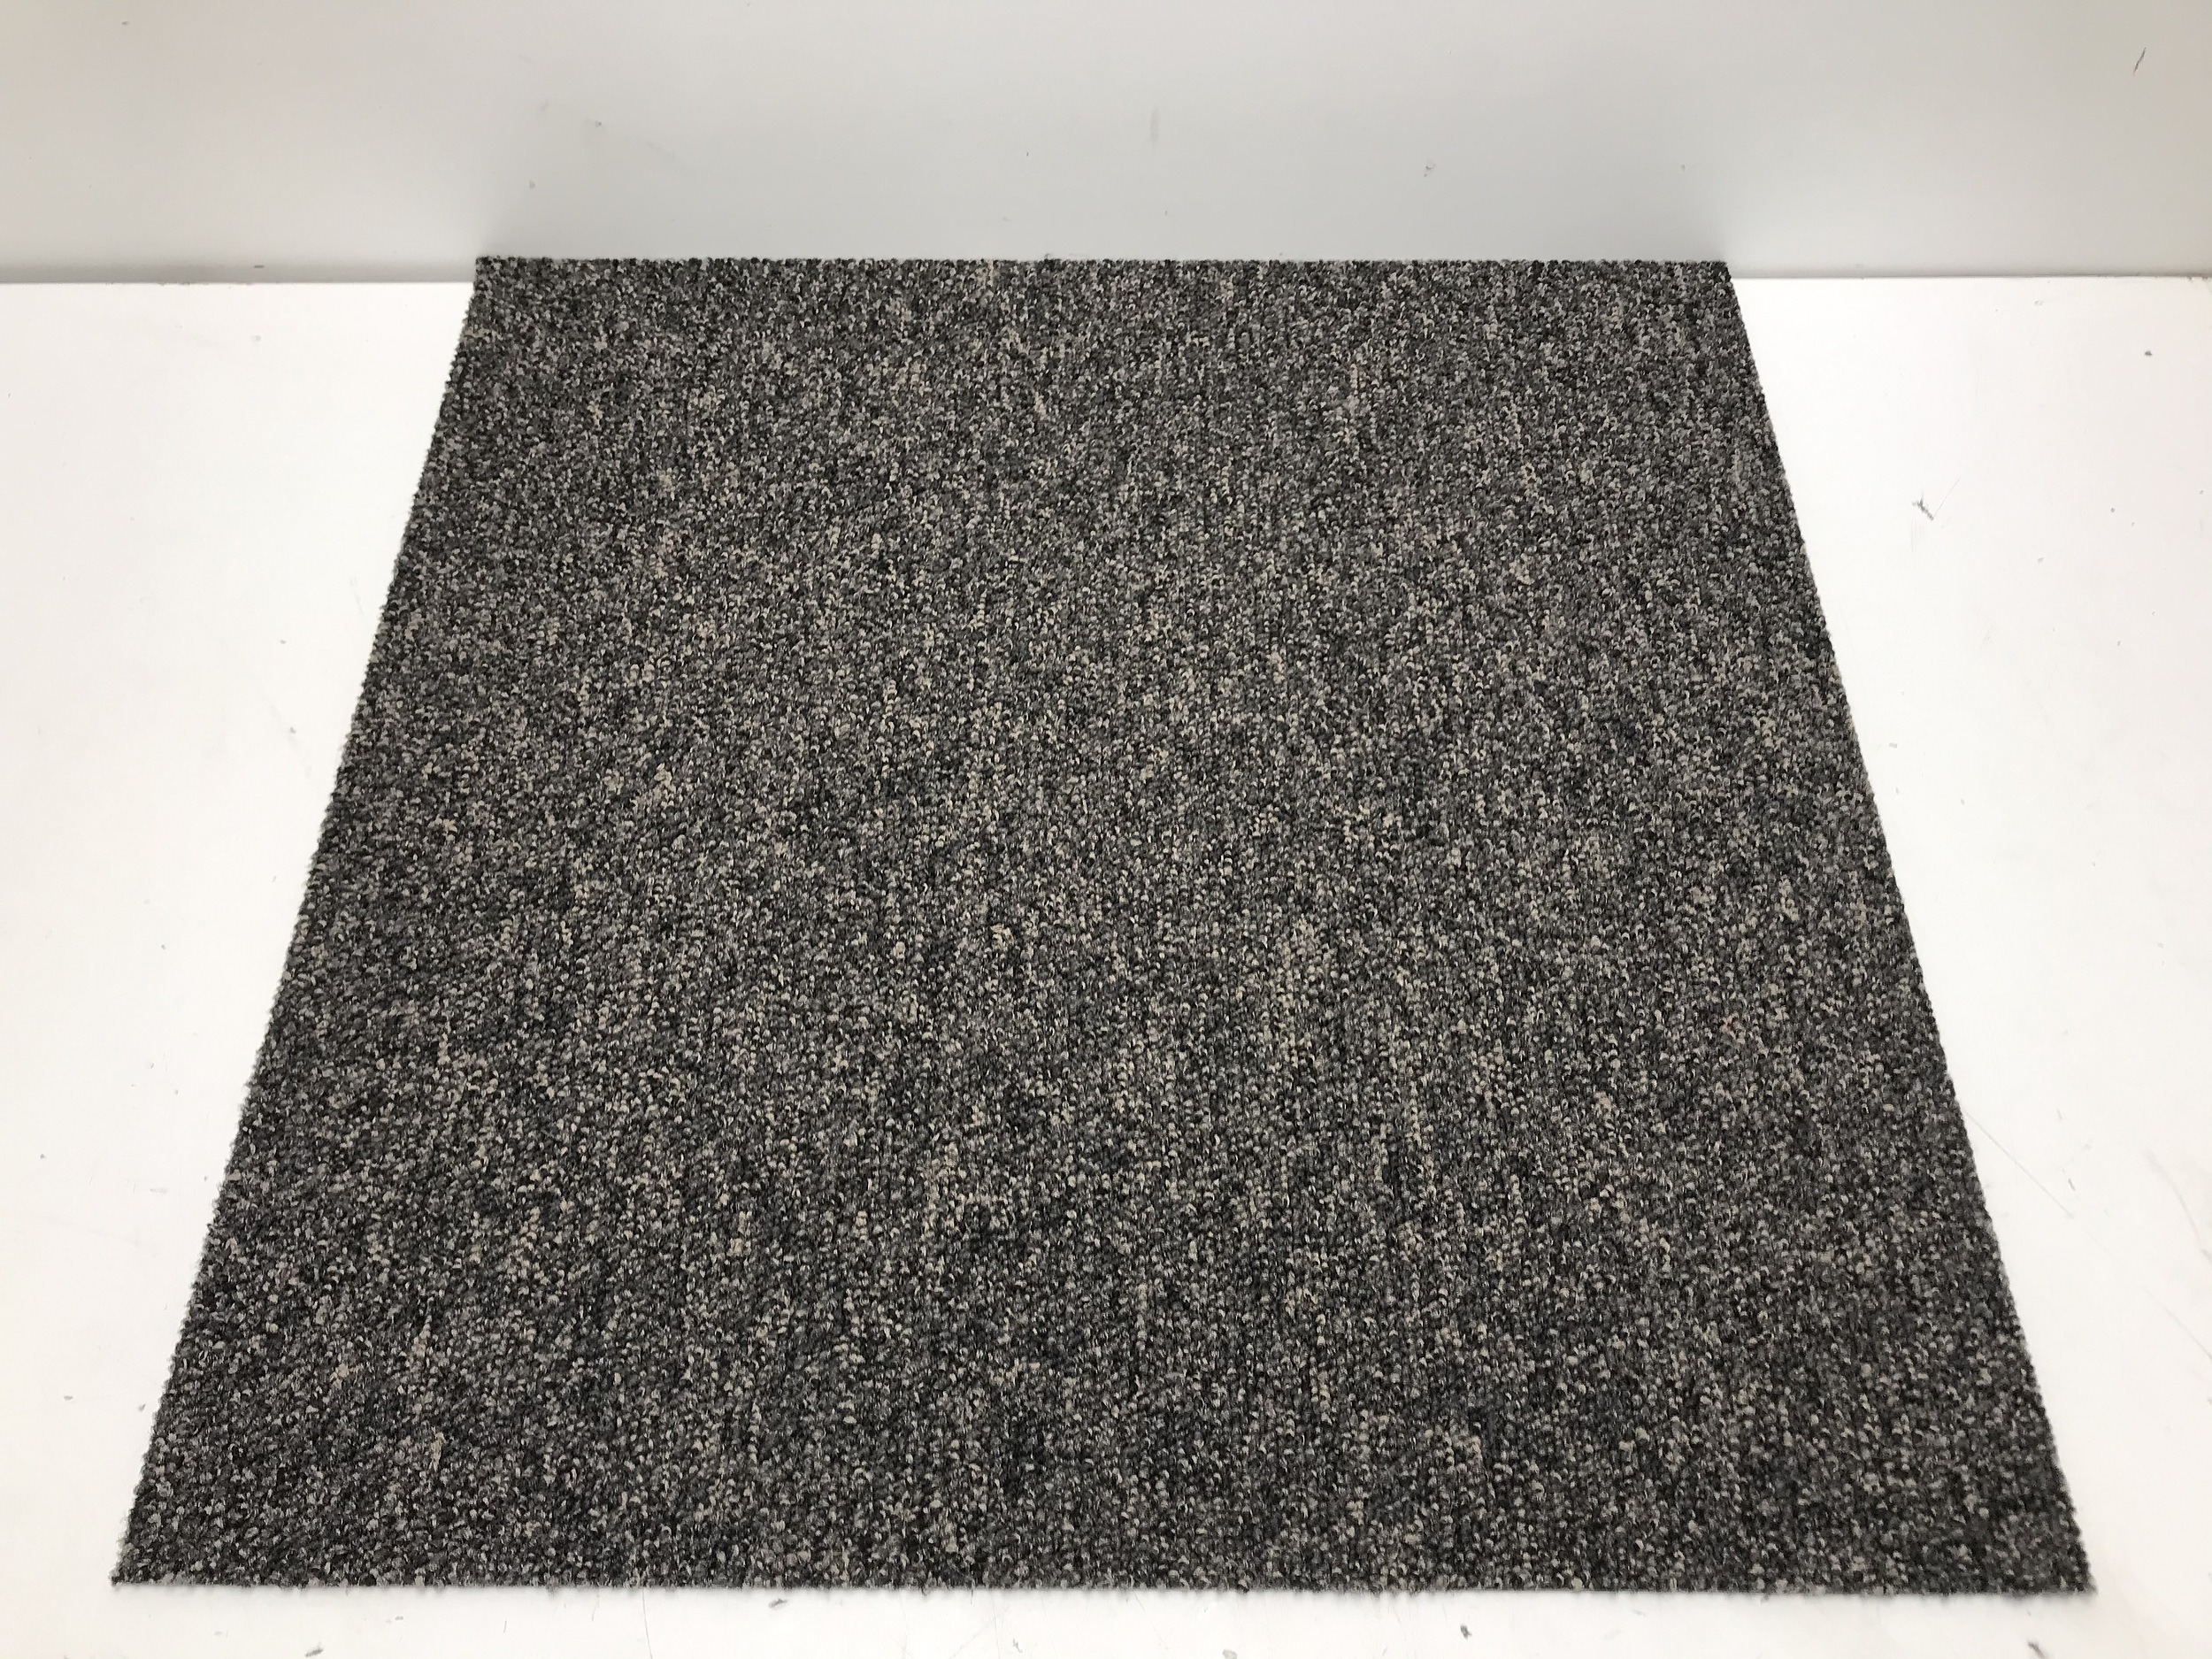 Grey Carpet Tiles -25 Square Metres - Lot 1220946 | ALLBIDS